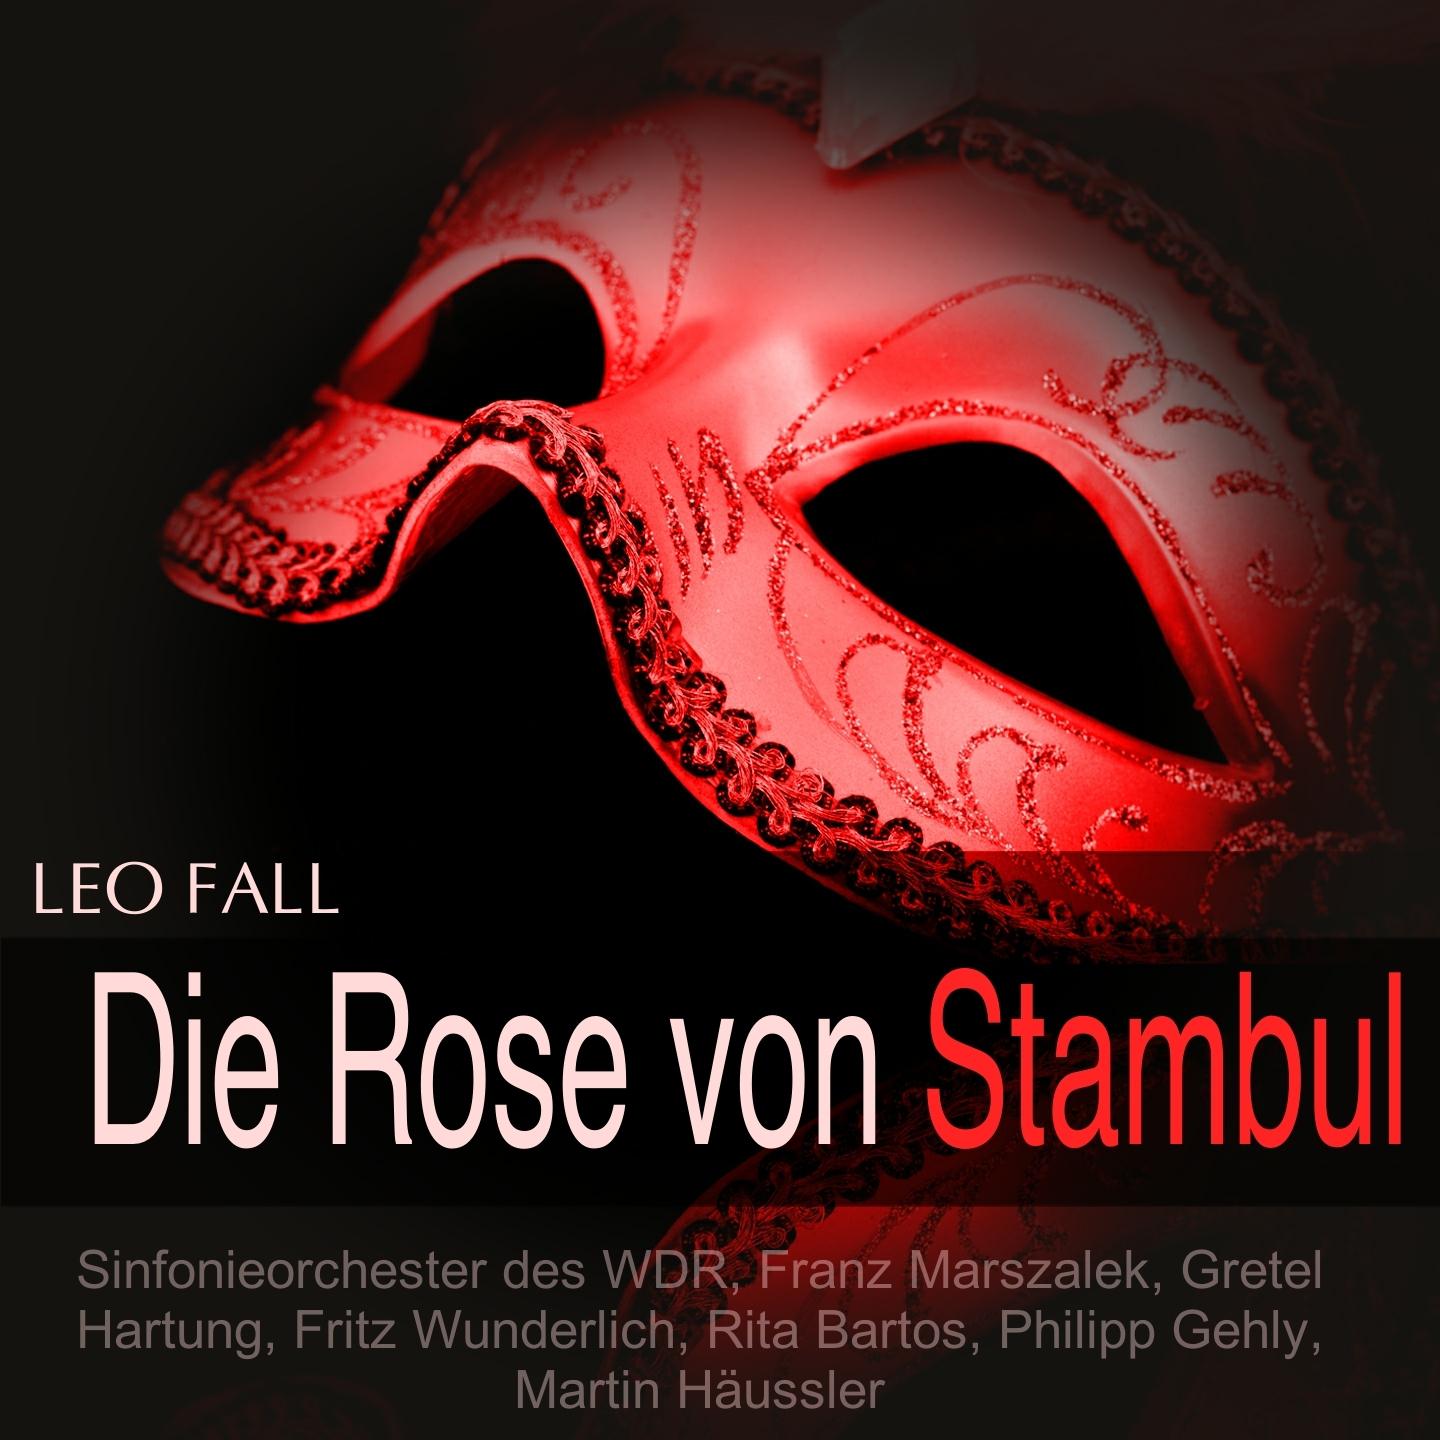 Die Rose von Stambul, Act III: "Ach, es macht mir wirklich Angst" - "Geh, sag doch Schnucki zu mir" (Midili, Fridolin)